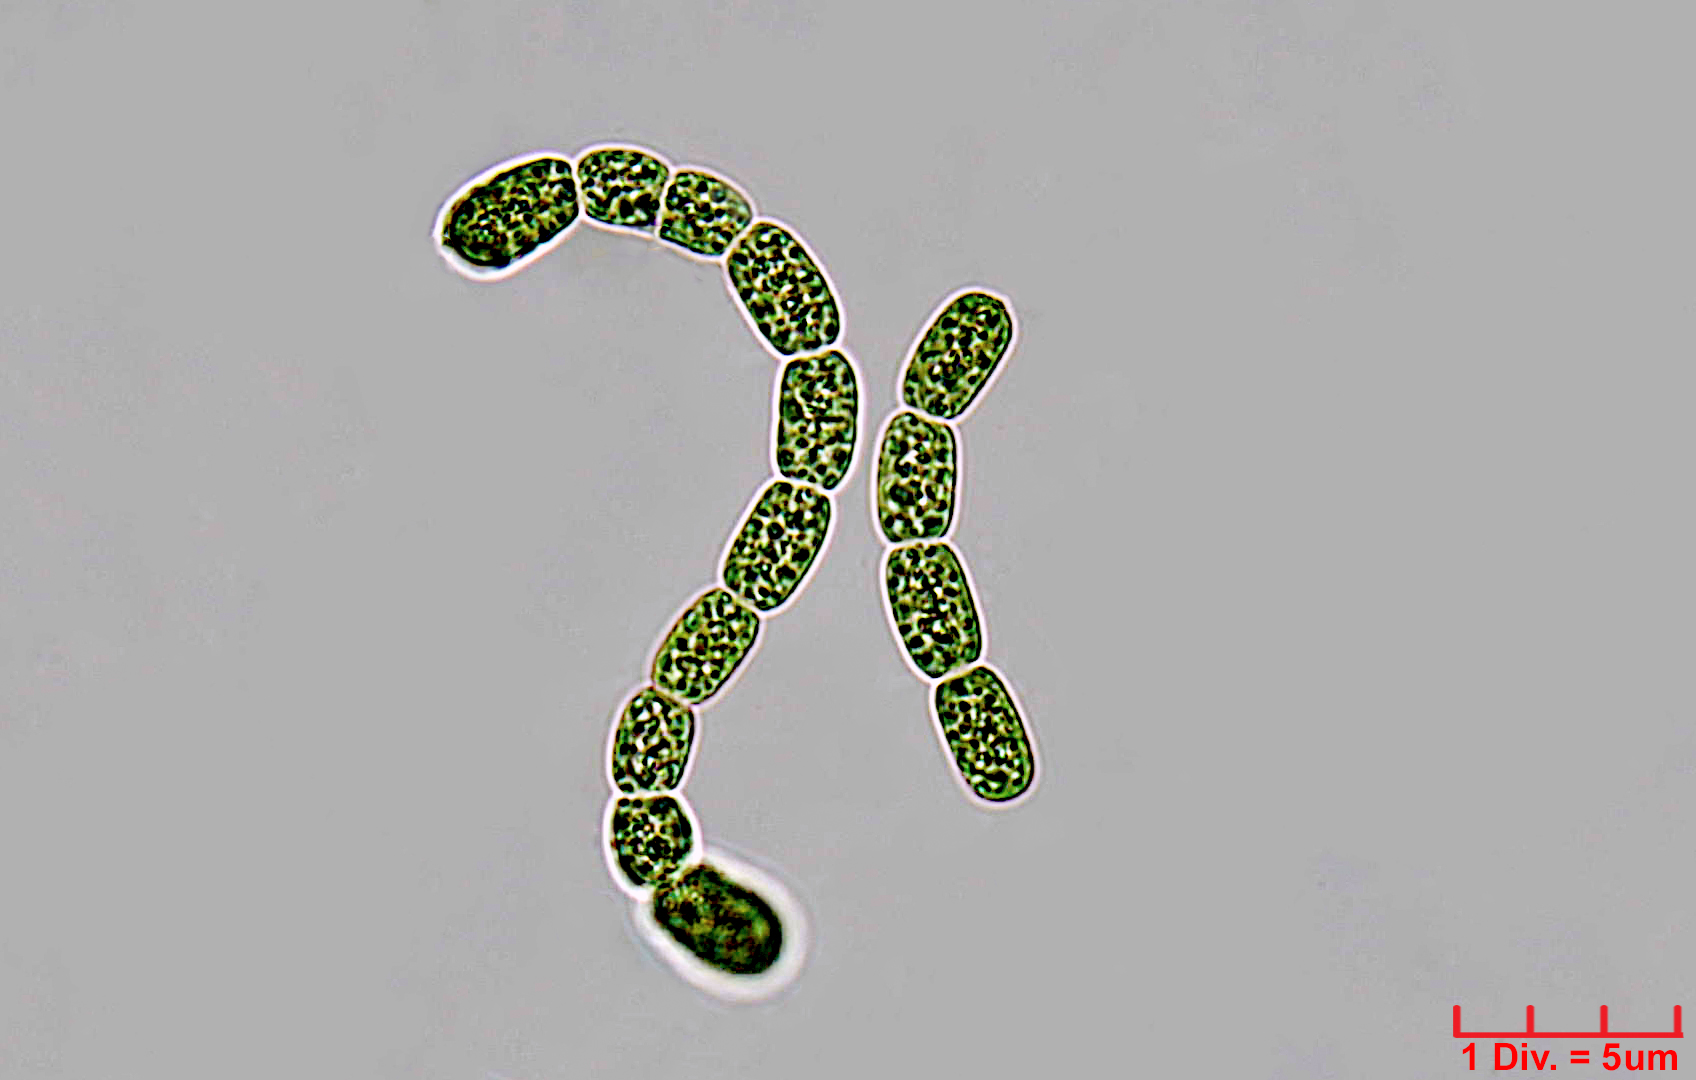 ./Cyanobacteria/Nostocales/Nostocaceae/Desmonostoc/muscorum/desmonostoc-muscorum-593.jpg